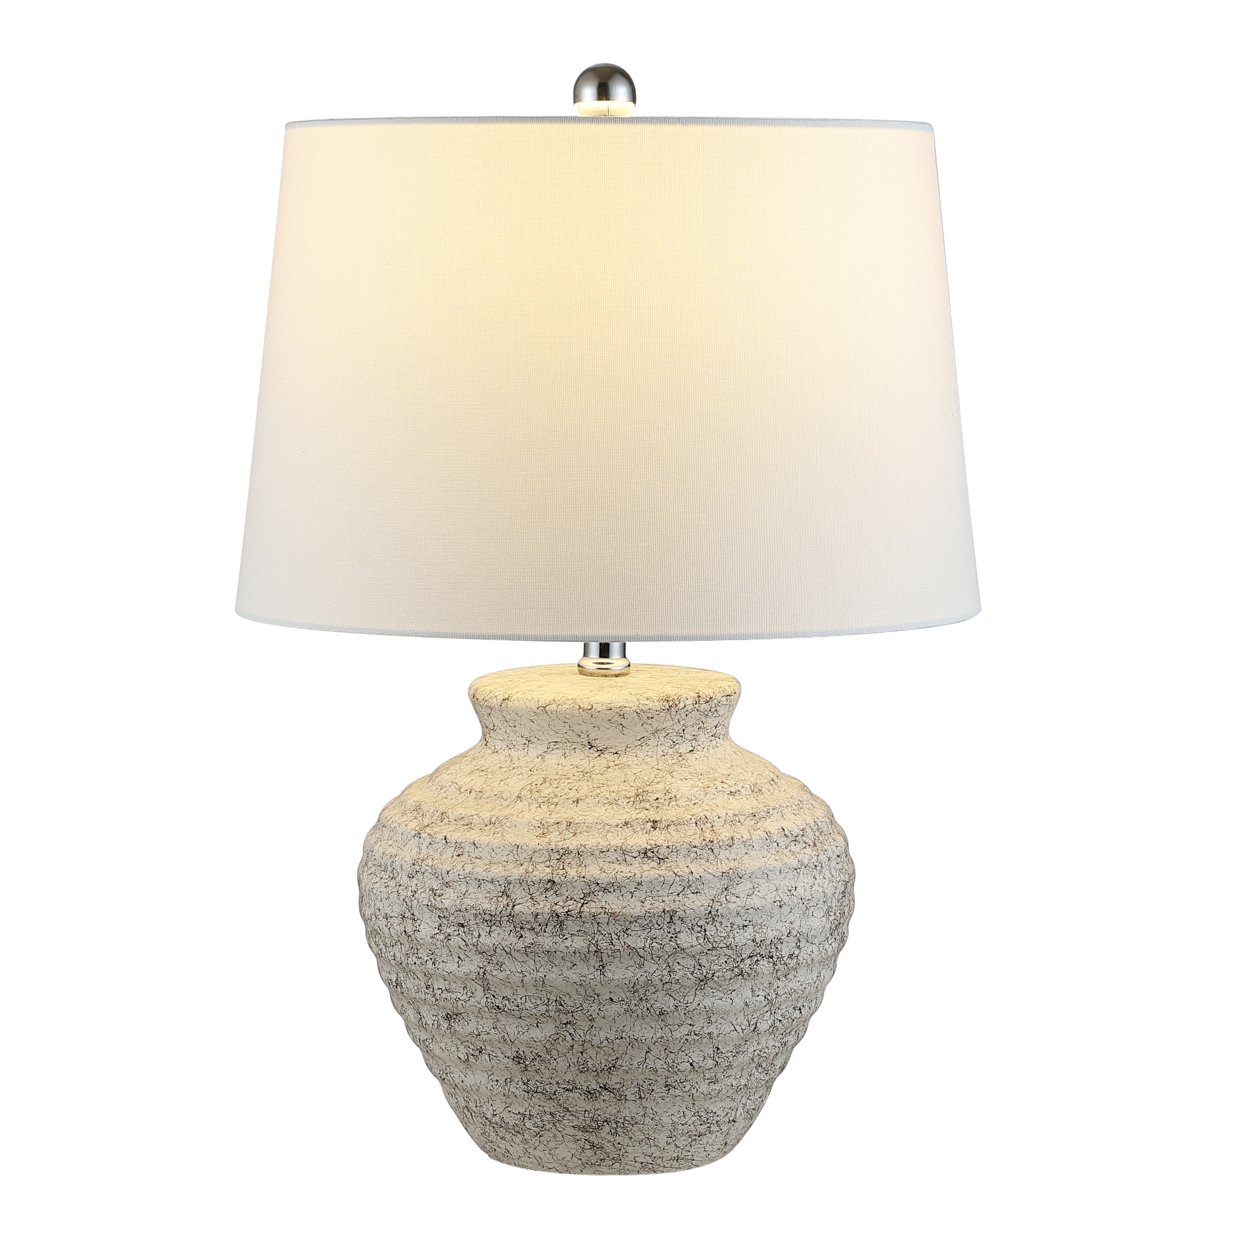 SAFAVIEH Ledger 22.5 Table Lamp , Light Grey ,